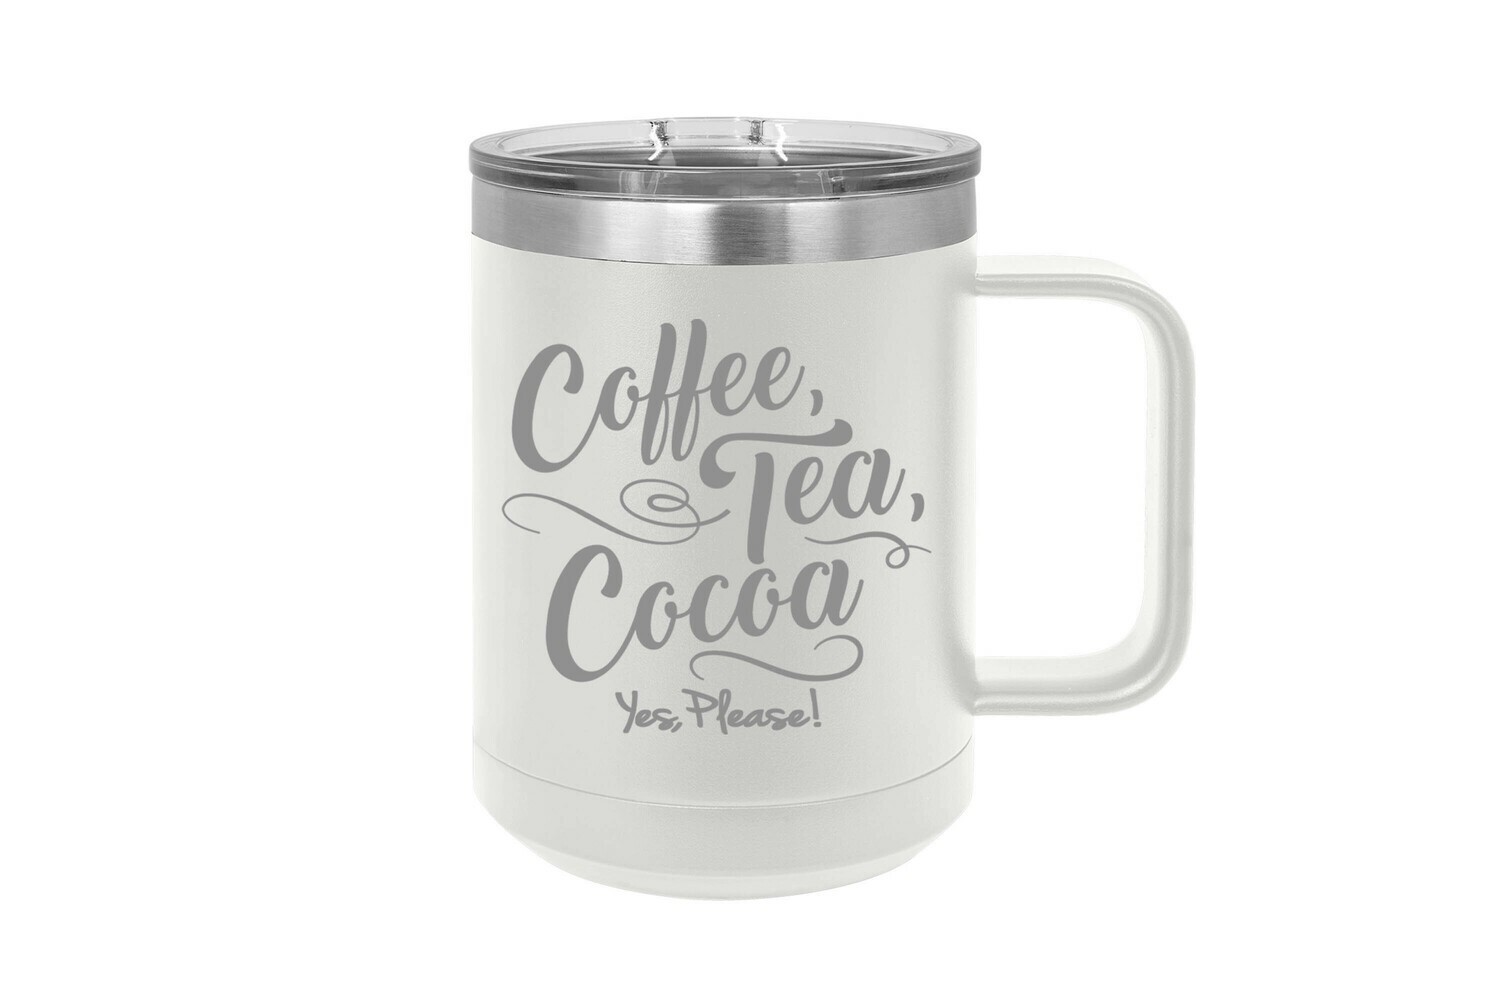 Coffee Tea Cocoa Yes Please! 15 oz Insulated Mug